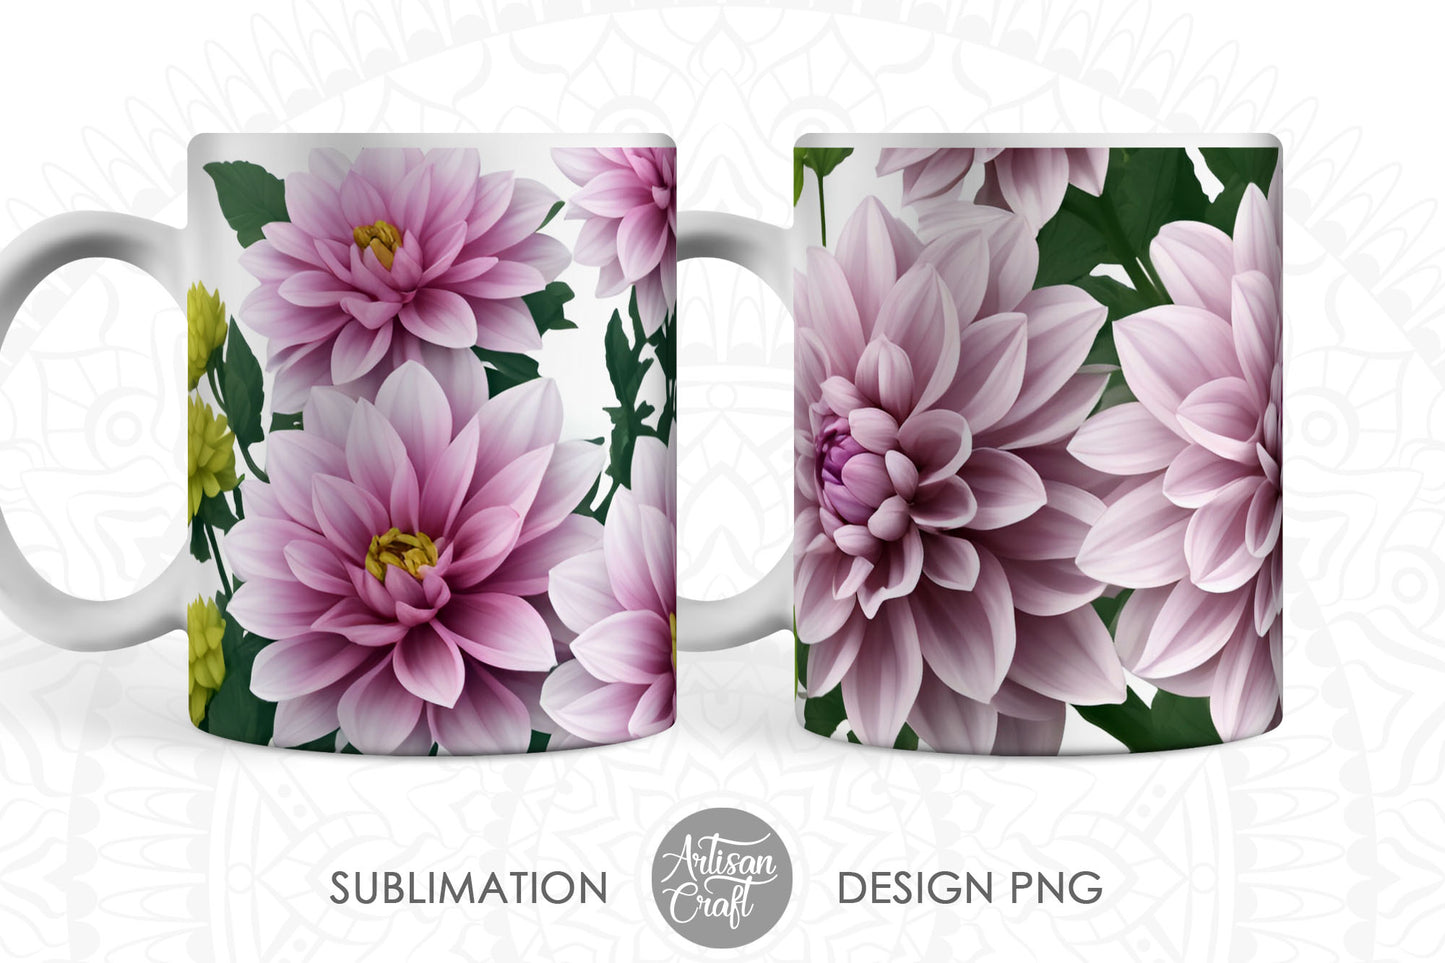 3D Dahlias mug sublimation designs, 3D flowers, 11oz mug, pink flowers